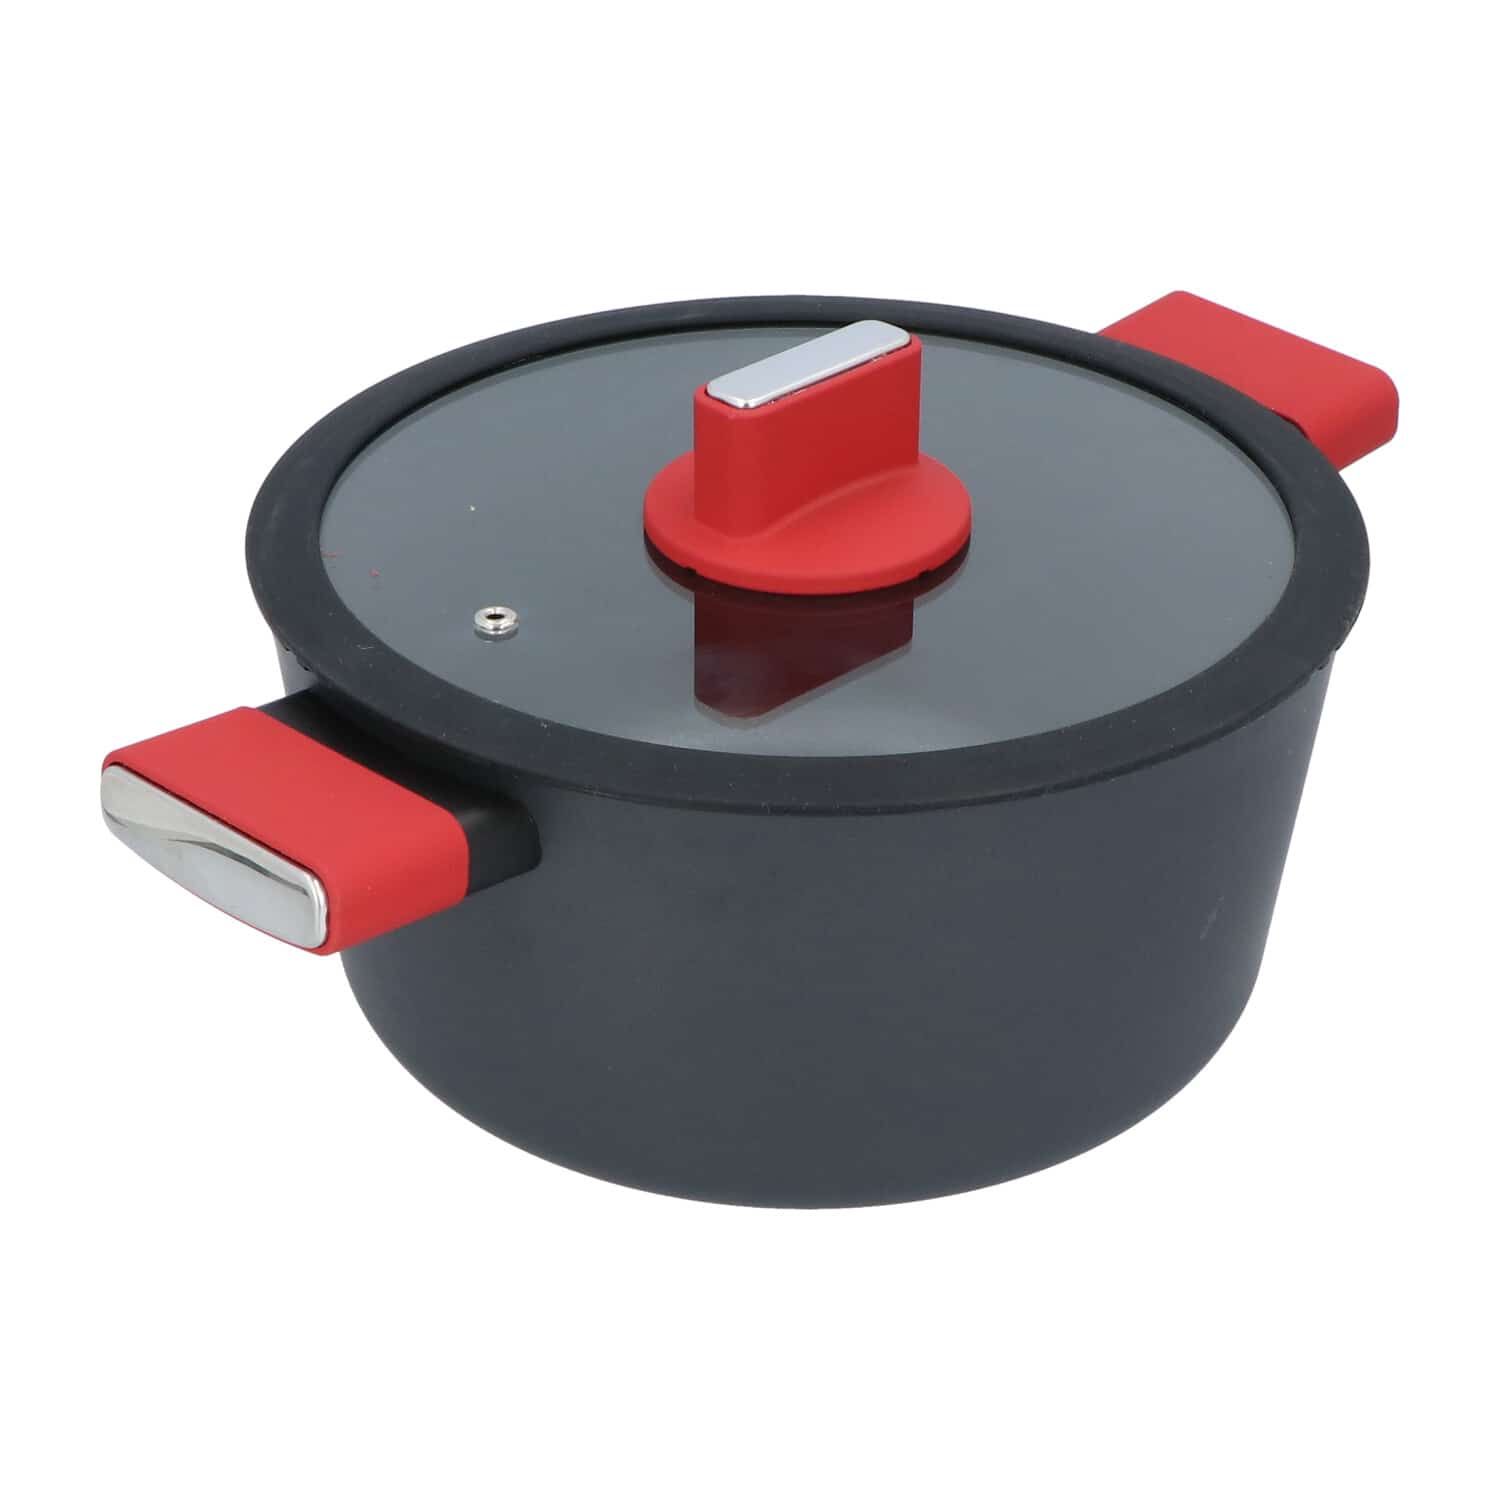 4goodz Aluminium Braadpan met siliconen handvat 25 cm - zwart/rood